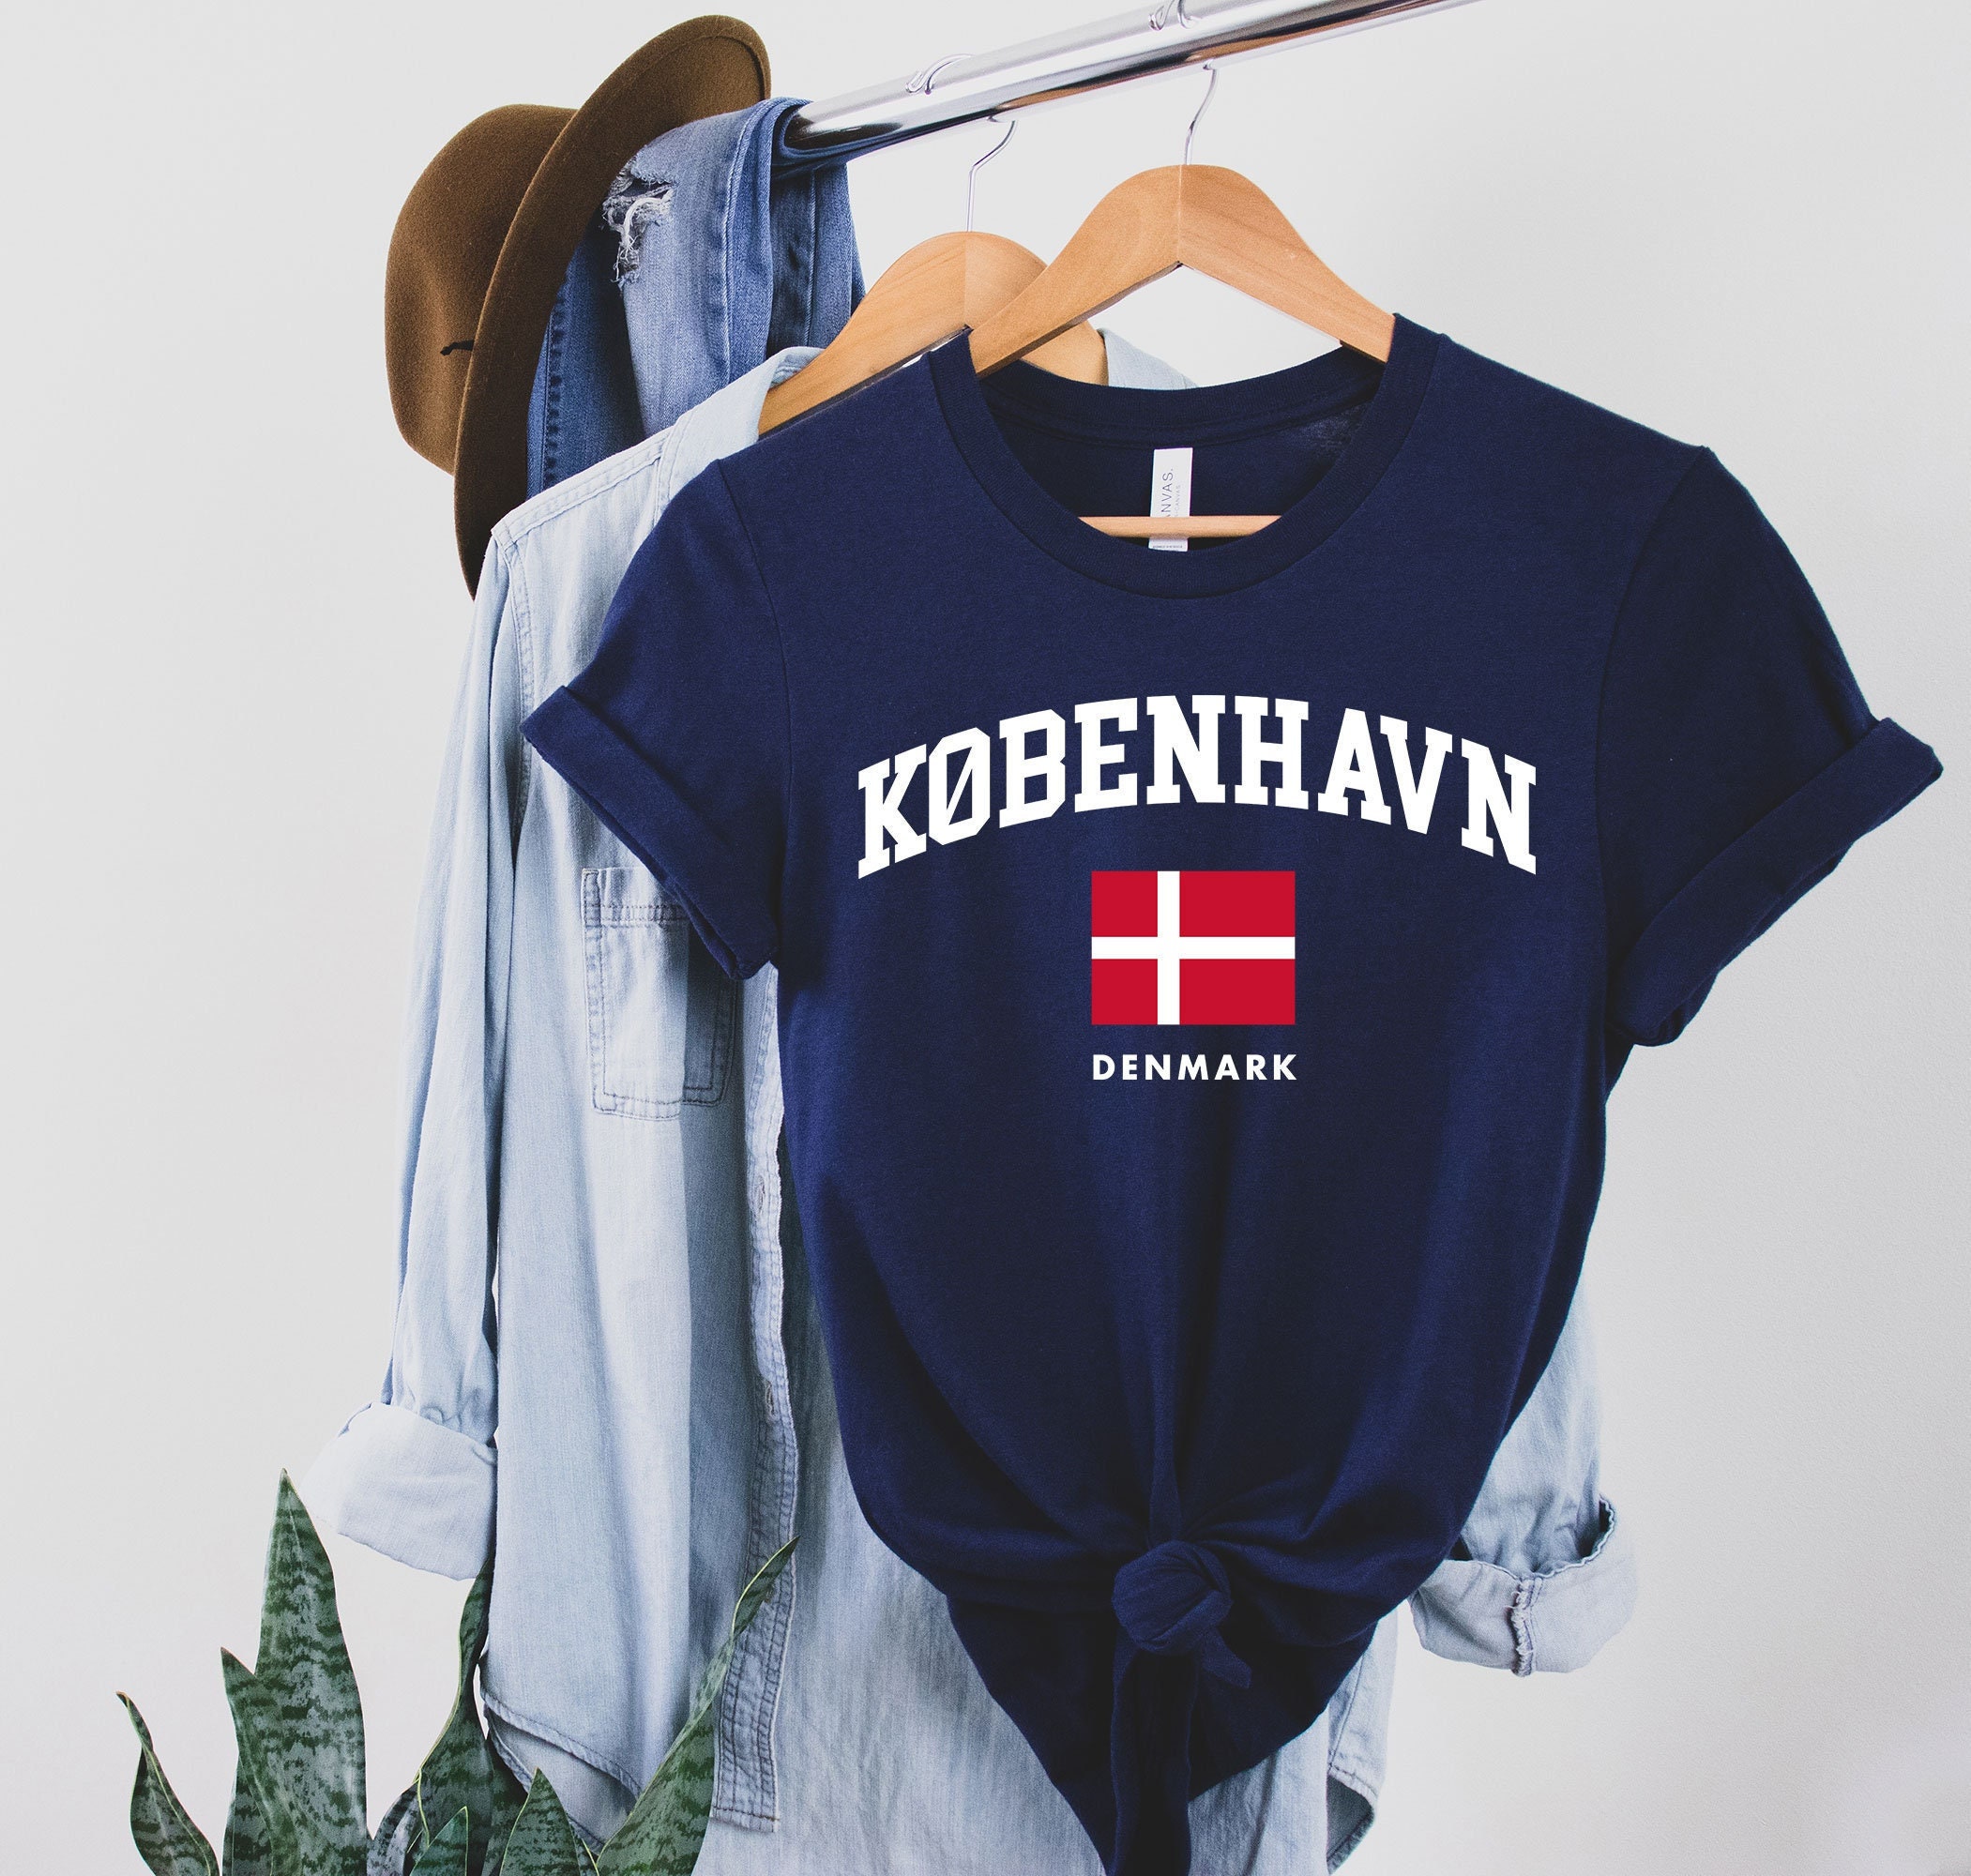 Denmark shirt,Danish Shirts, Danish Tshirt, Danish Shirt